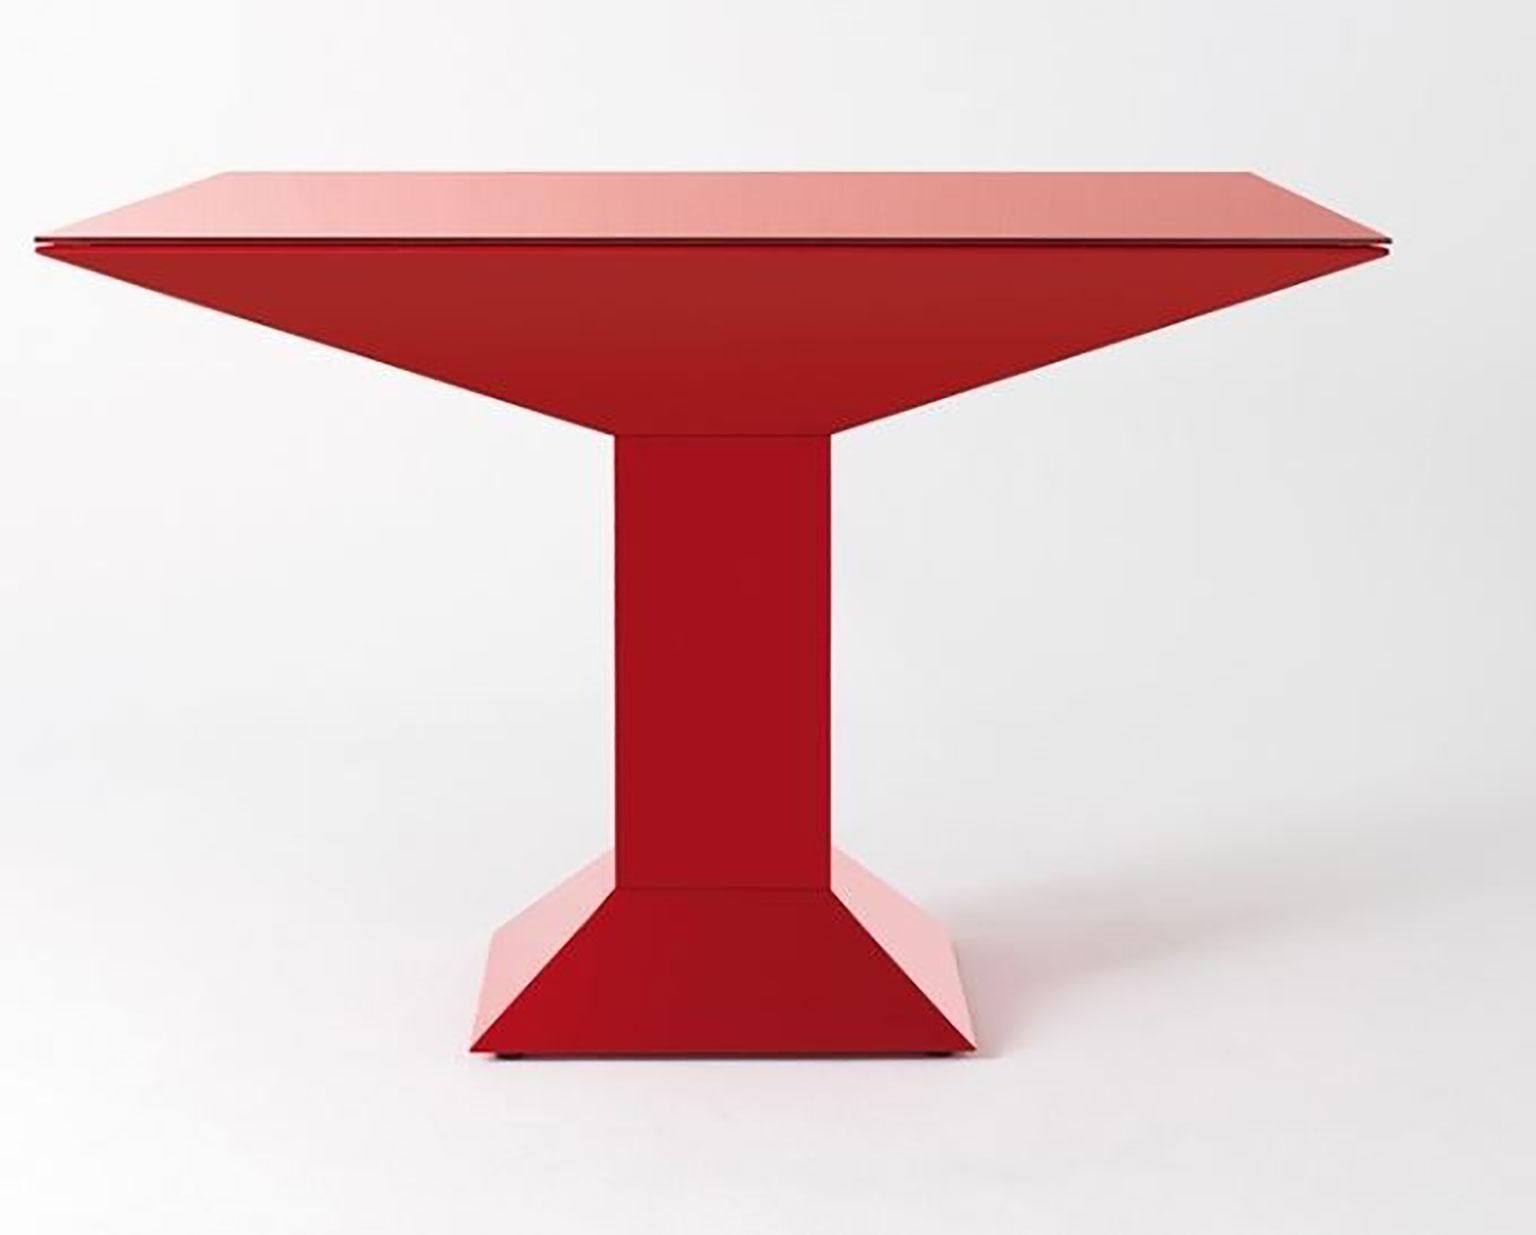 Table Metsass conçue par Ettore Sottsass Jr. pour BD Barcelona. La structure est faite de feuilles d'acier plates, peintes en rouge. Le plateau en verre est peint dans la même couleur que la base. Dans les années 1970, Sottsass a créé de nombreux